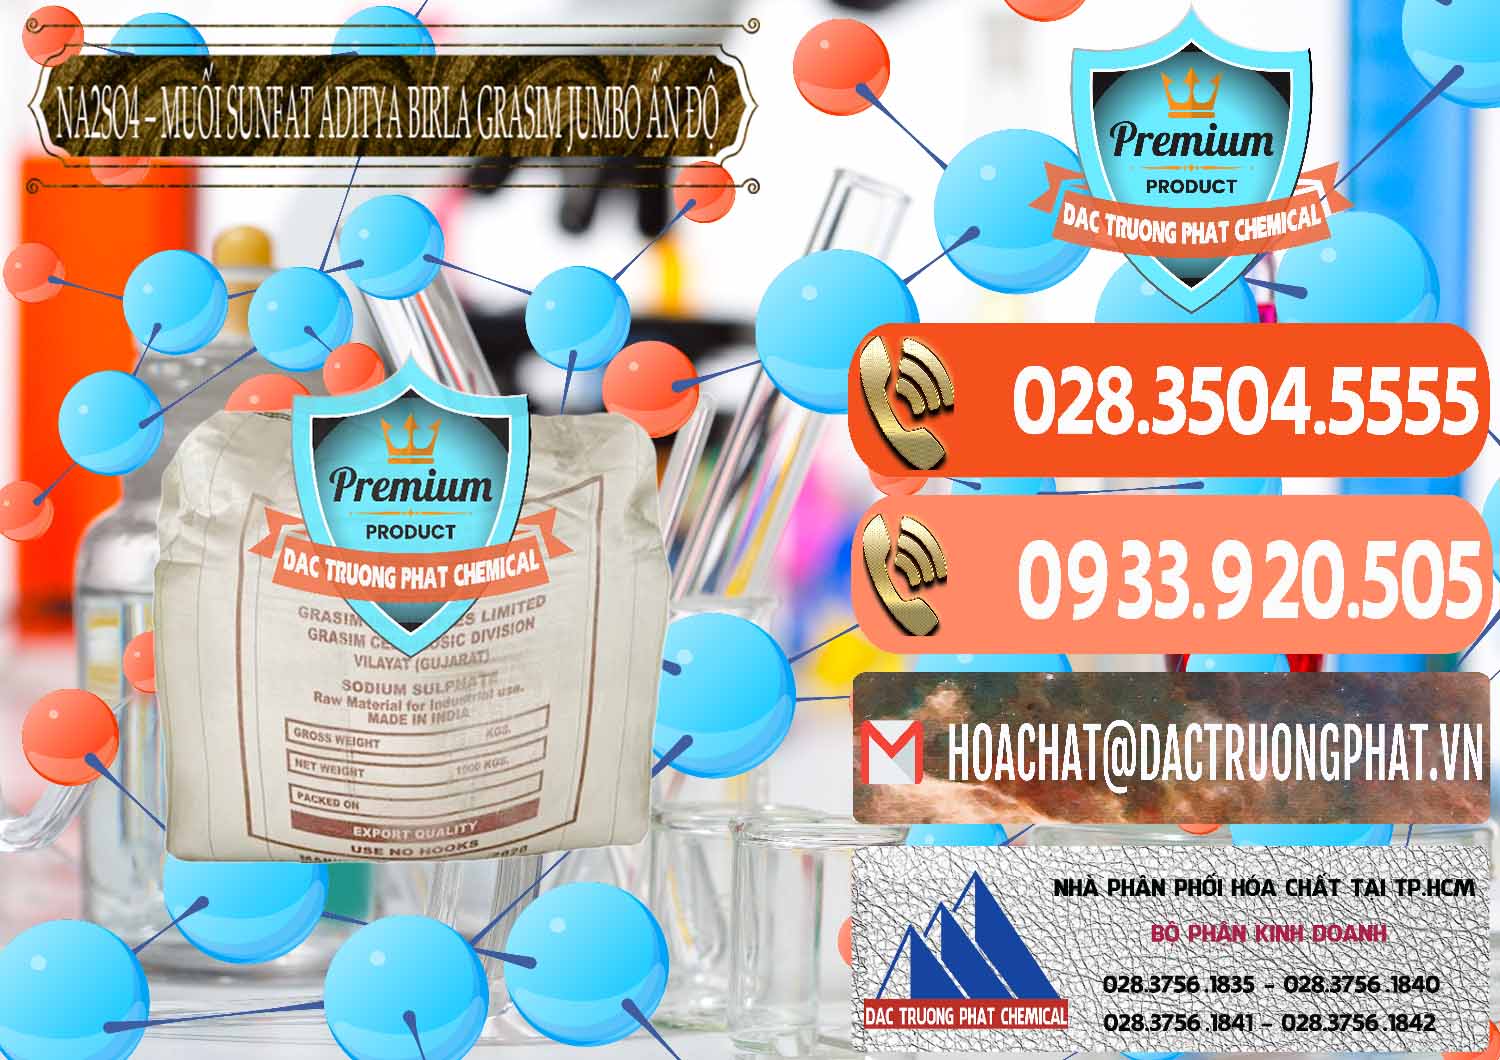 Công ty kinh doanh & bán Sodium Sulphate - Muối Sunfat Na2SO4 Jumbo Bành Aditya Birla Grasim Ấn Độ India - 0357 - Nơi chuyên cung cấp và bán hóa chất tại TP.HCM - hoachatmientay.com